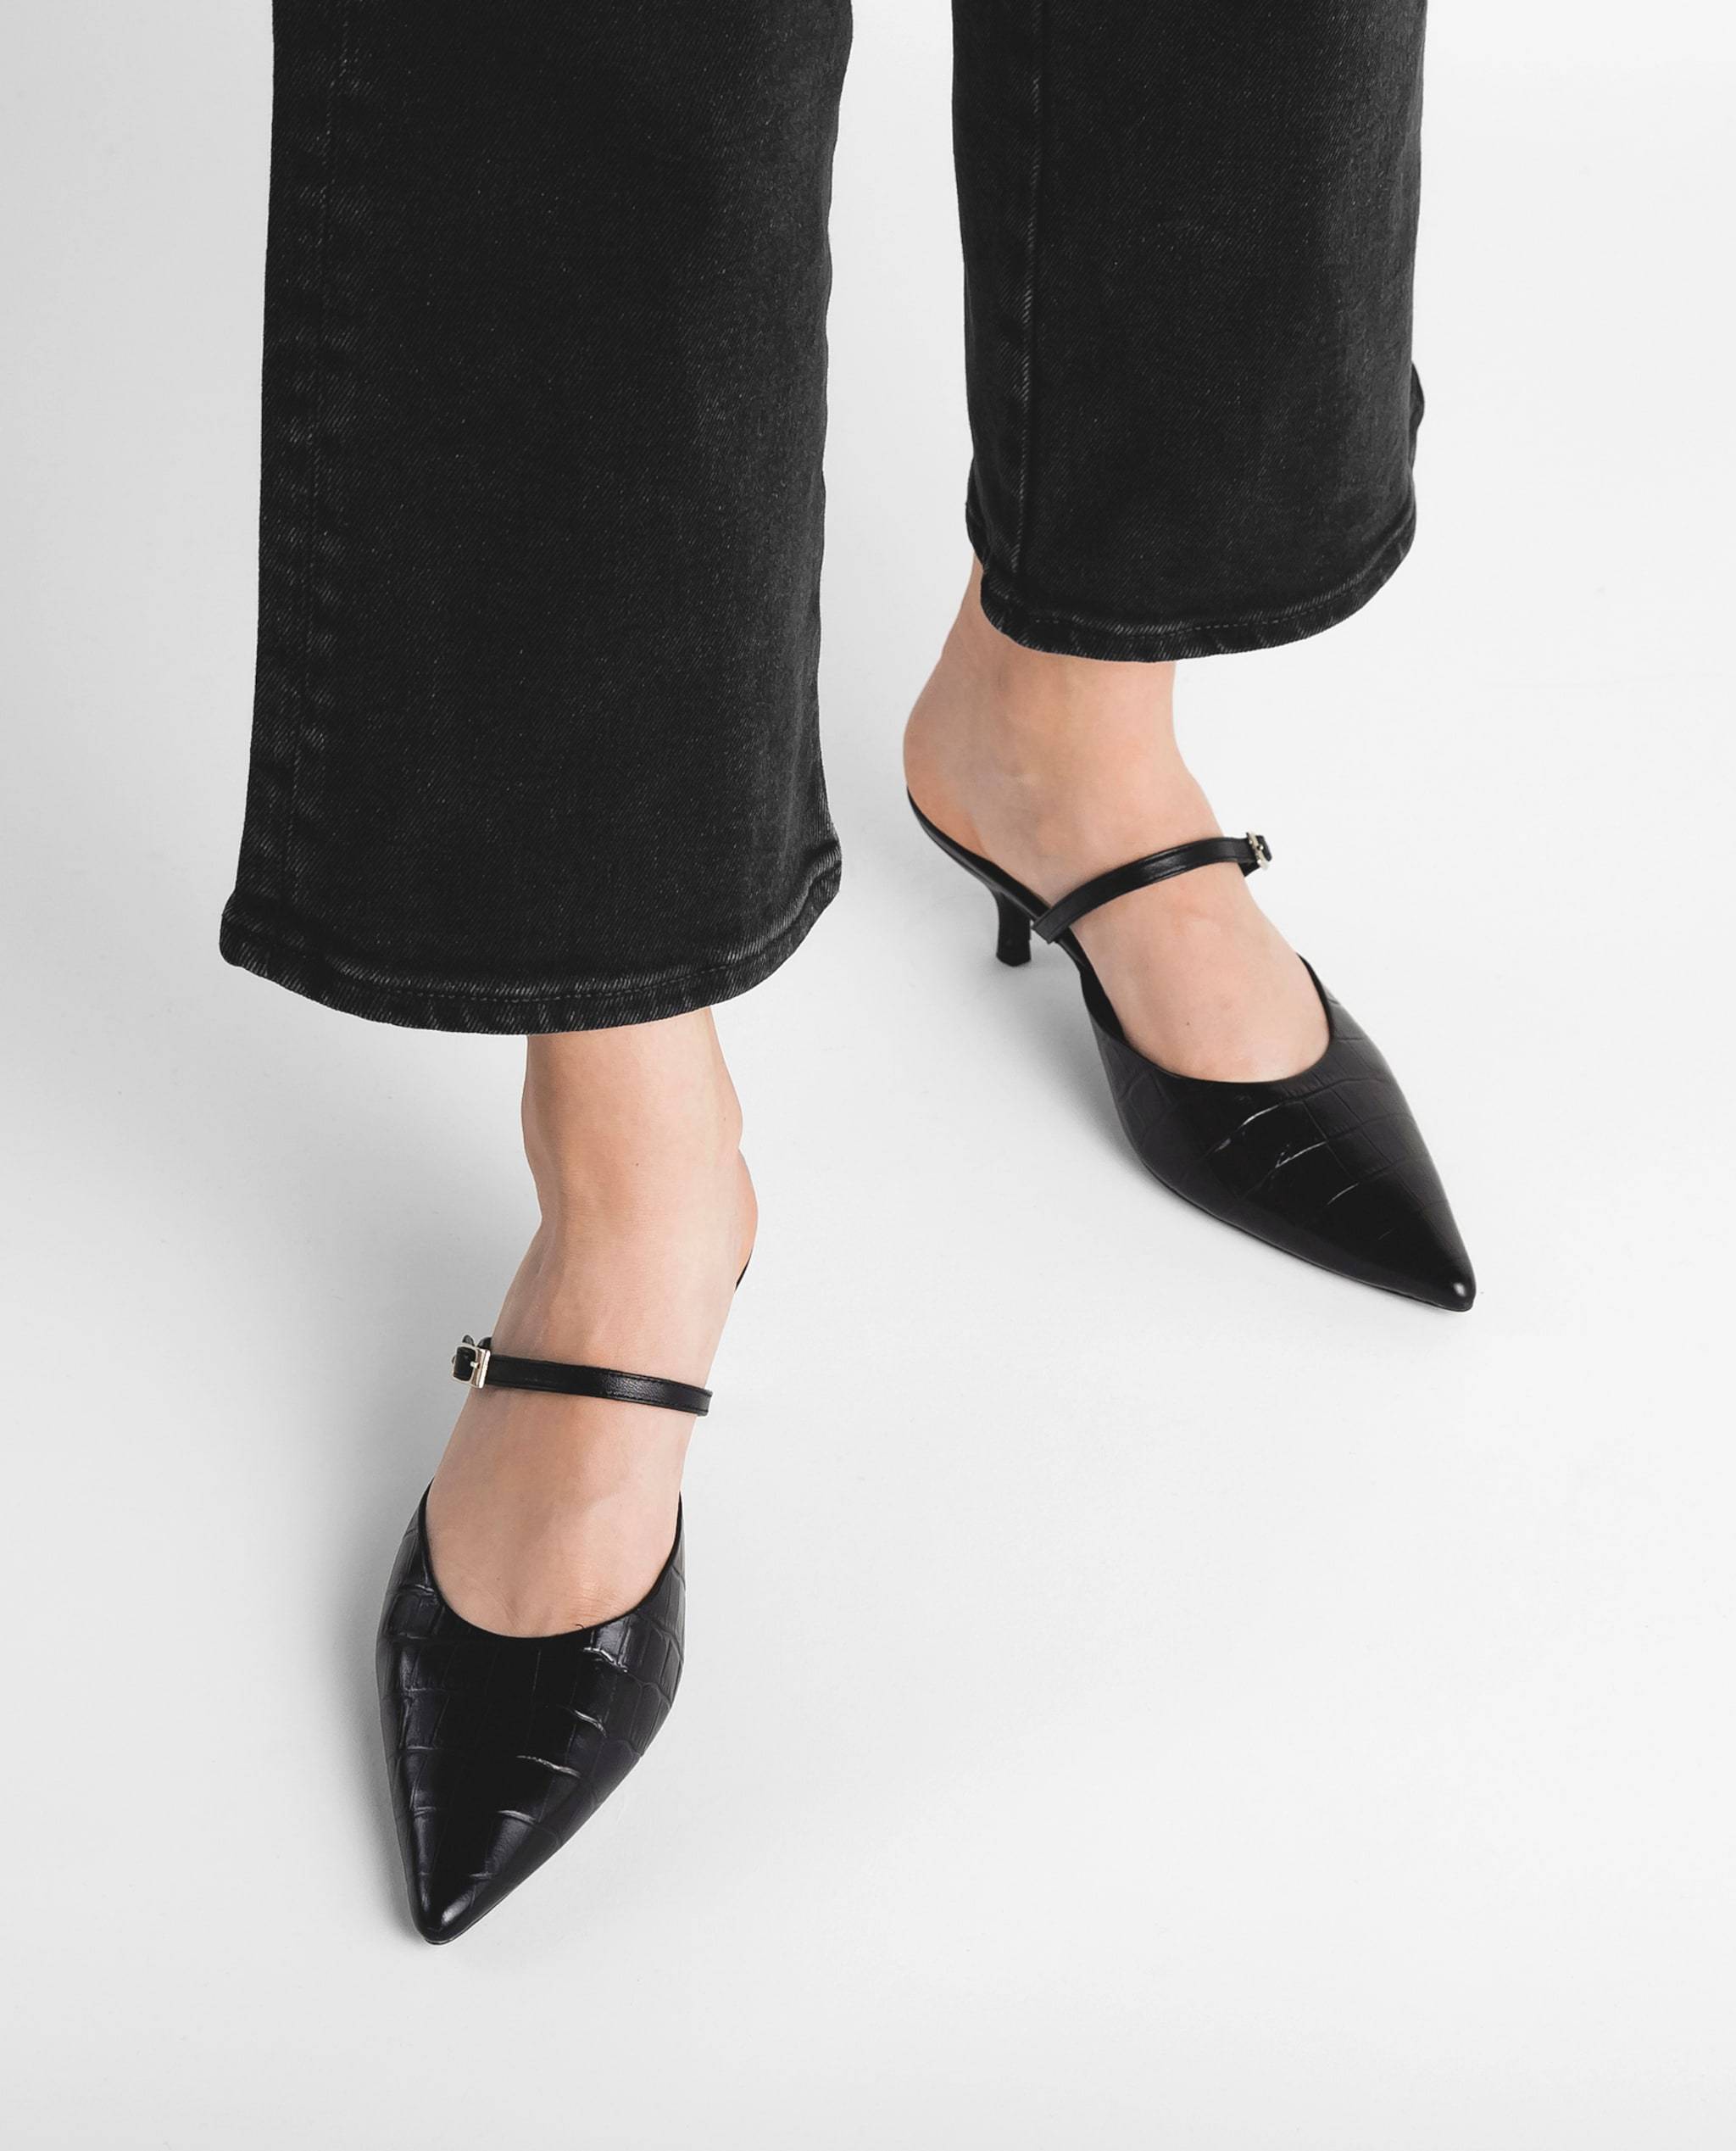 Hilda Croco Leather Black Mule Shoes Heels - 3